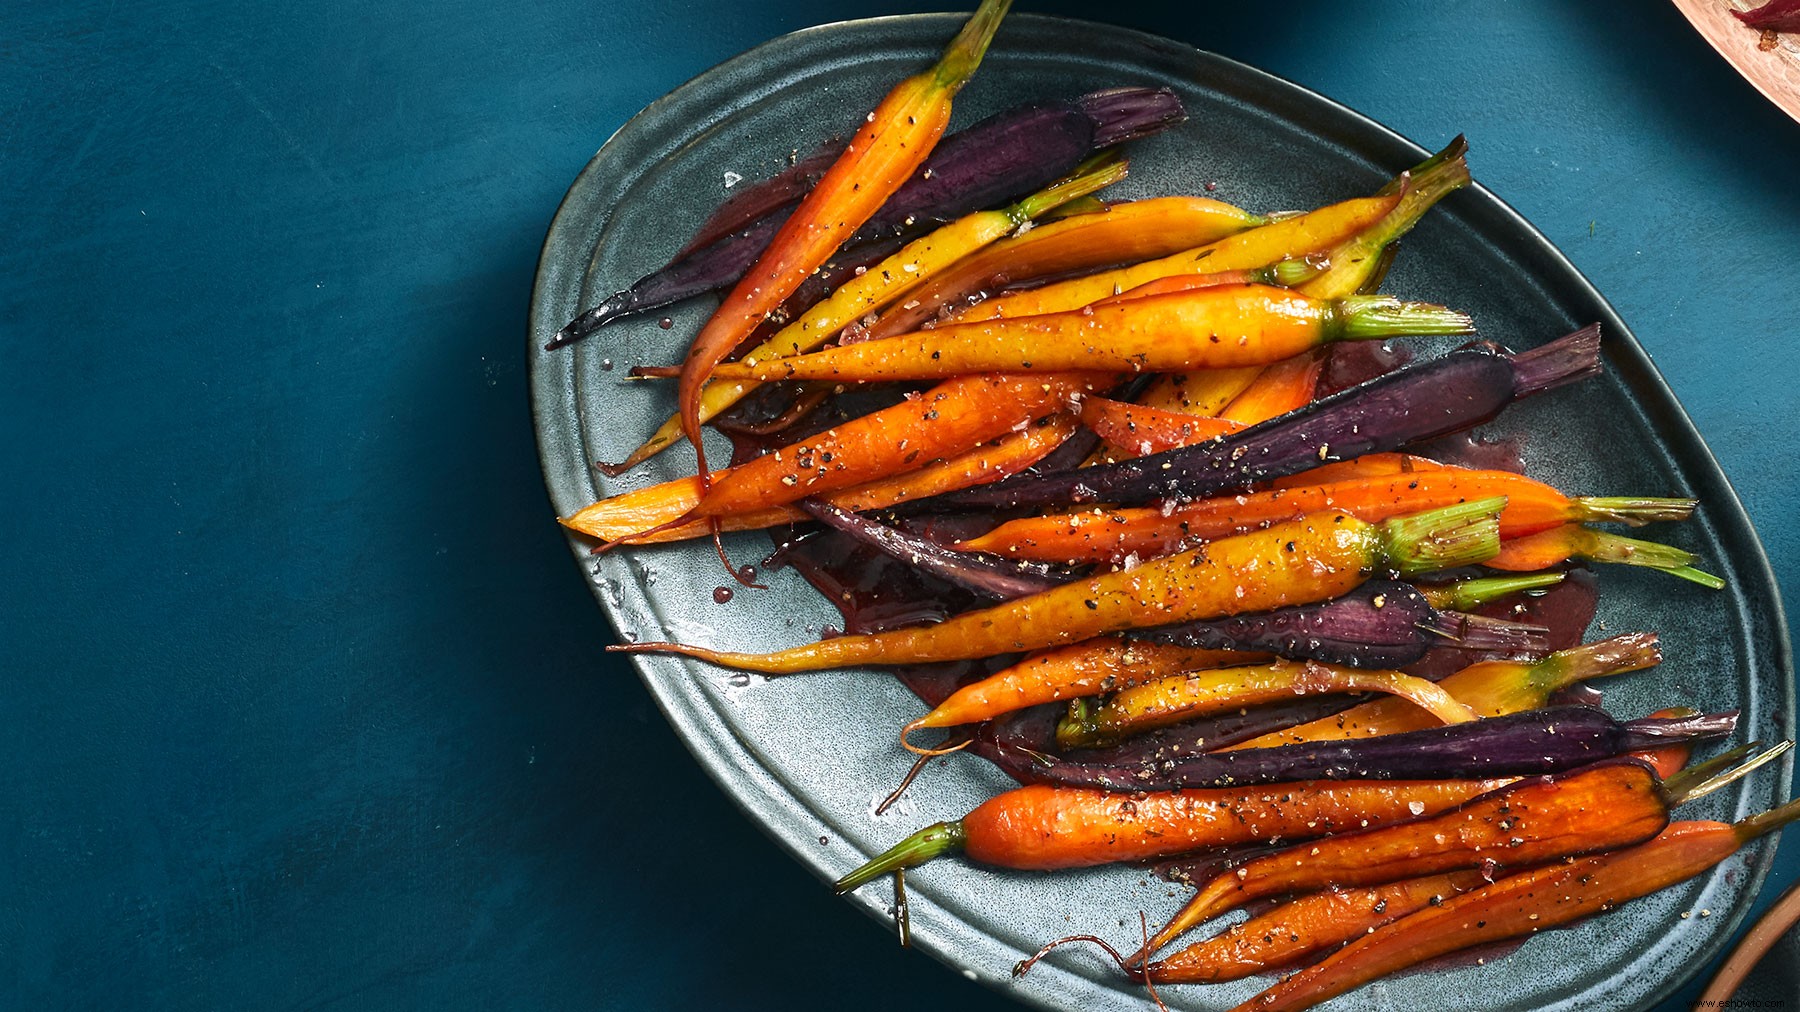 5 razones por las que deberías comer más zanahorias, según RD 